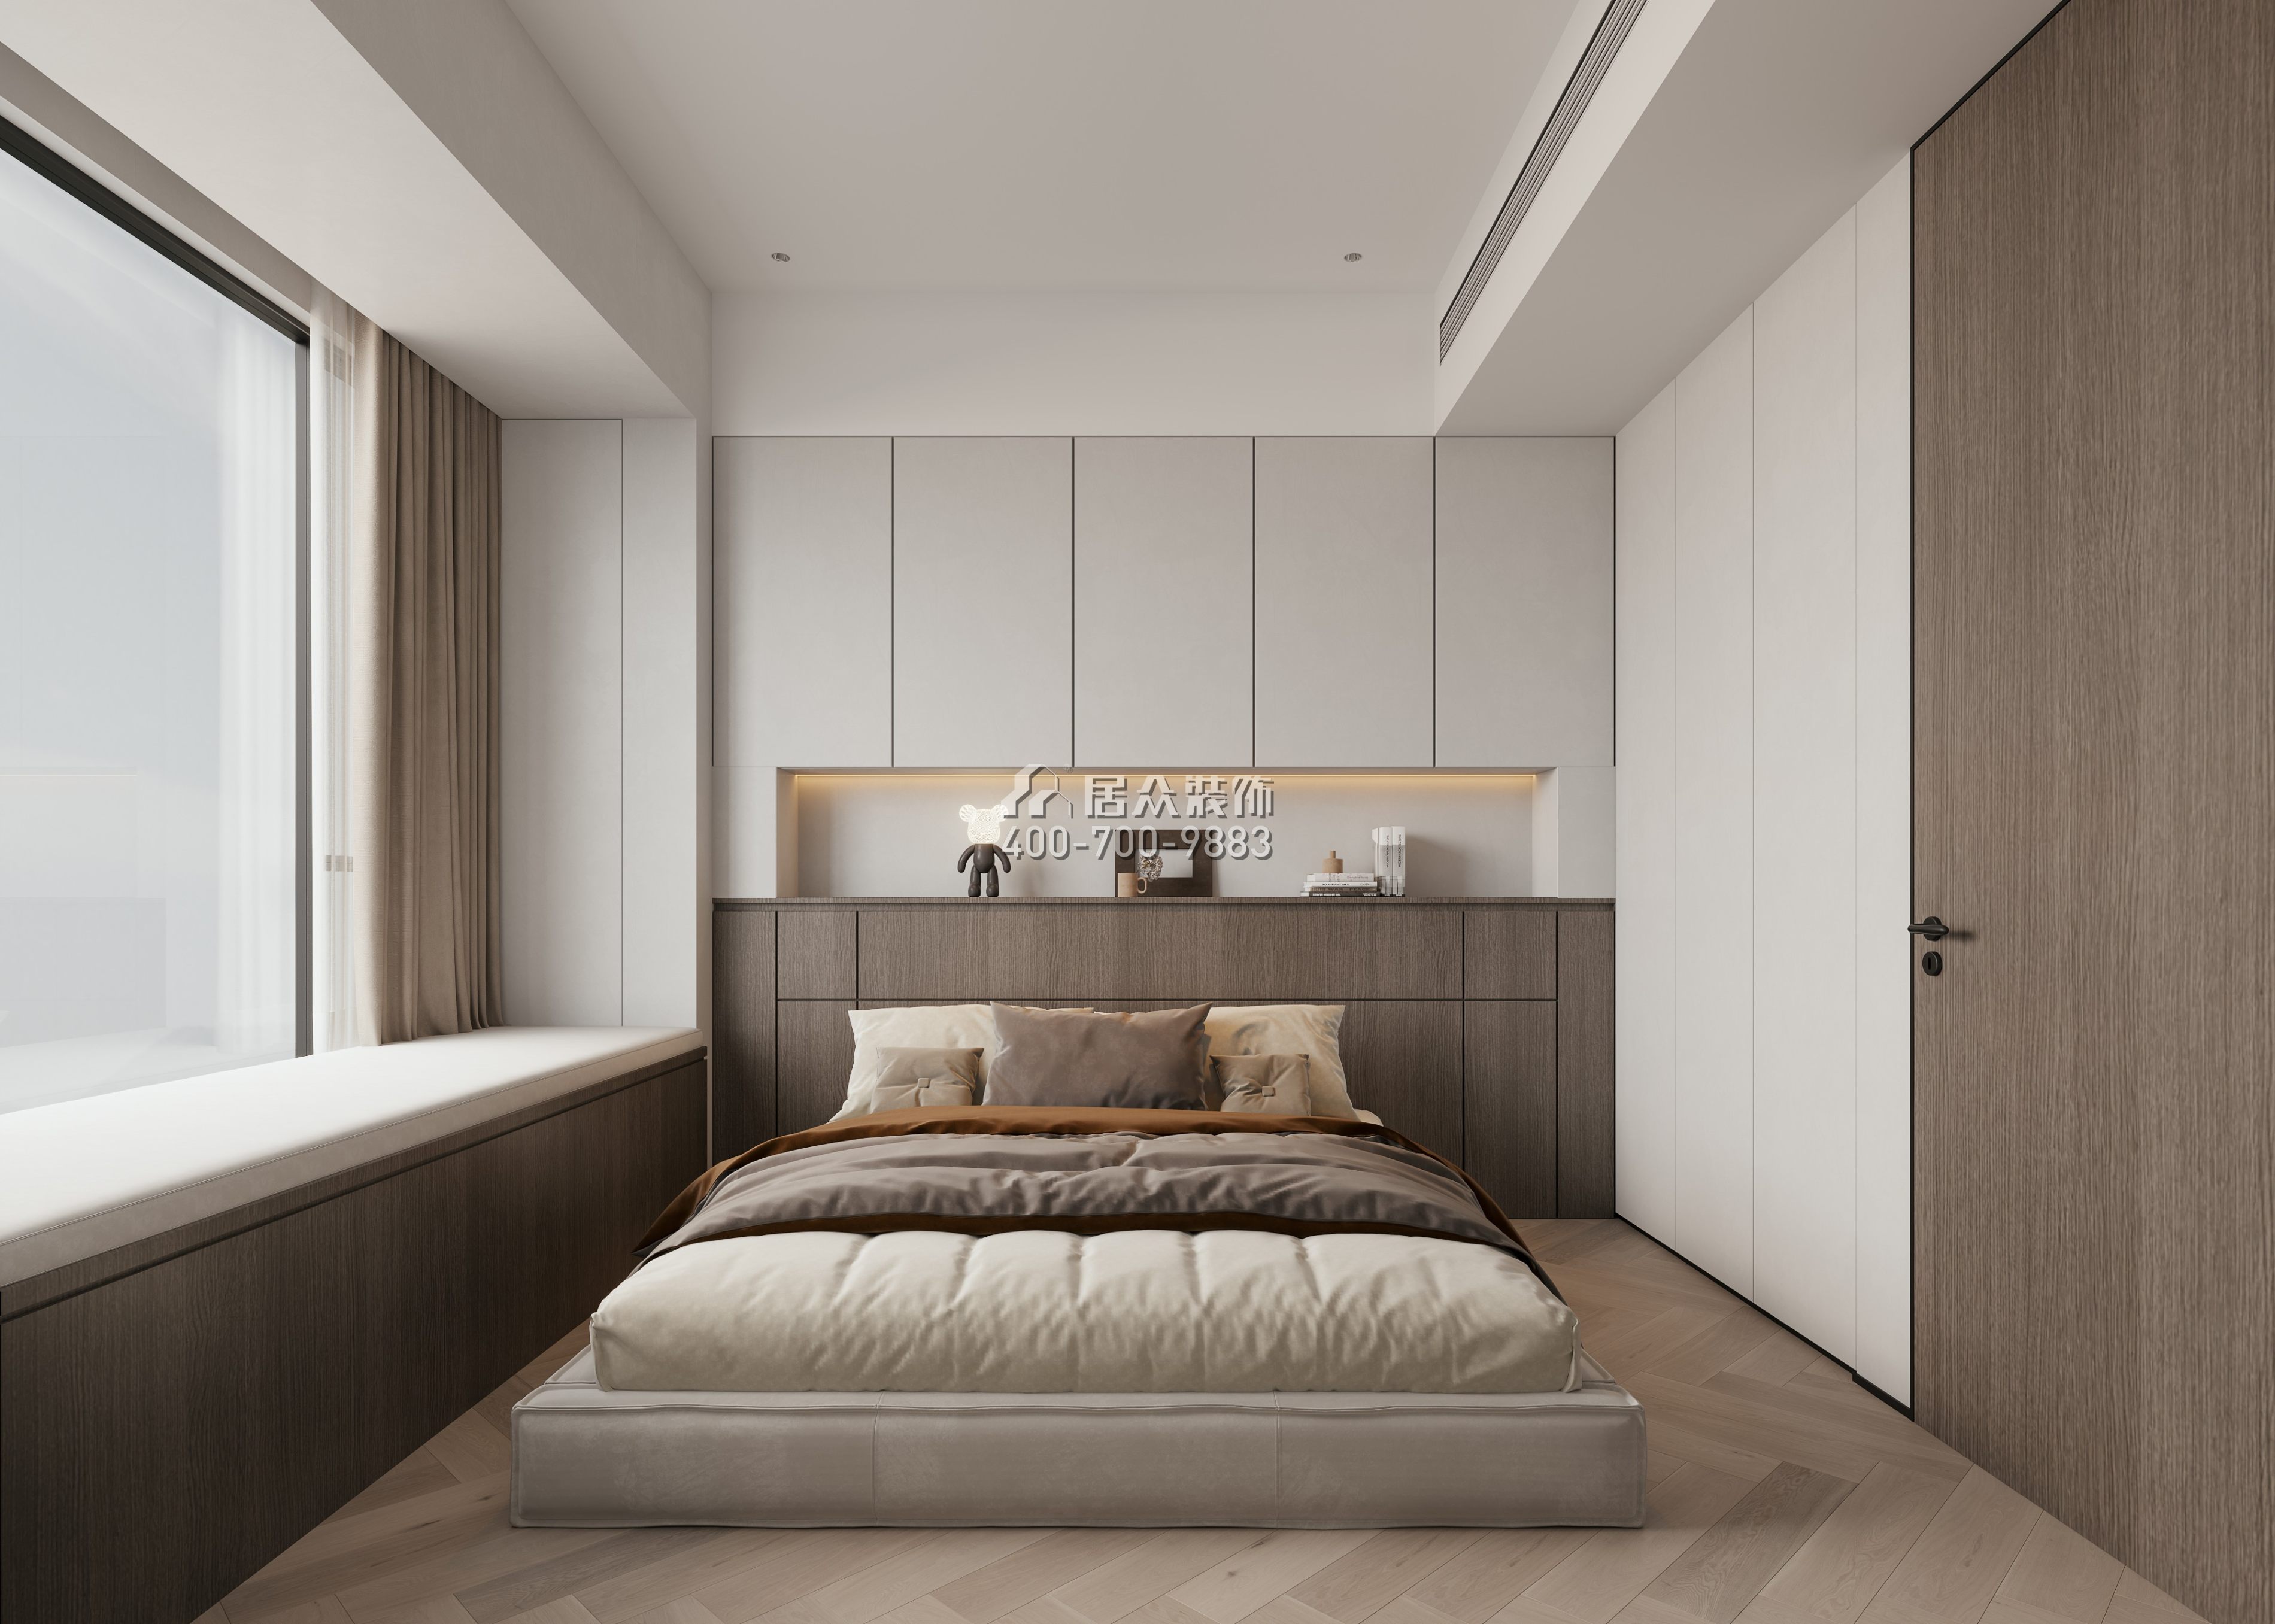 南海玫瑰園二期90平方米現代簡約風格平層戶型臥室裝修效果圖